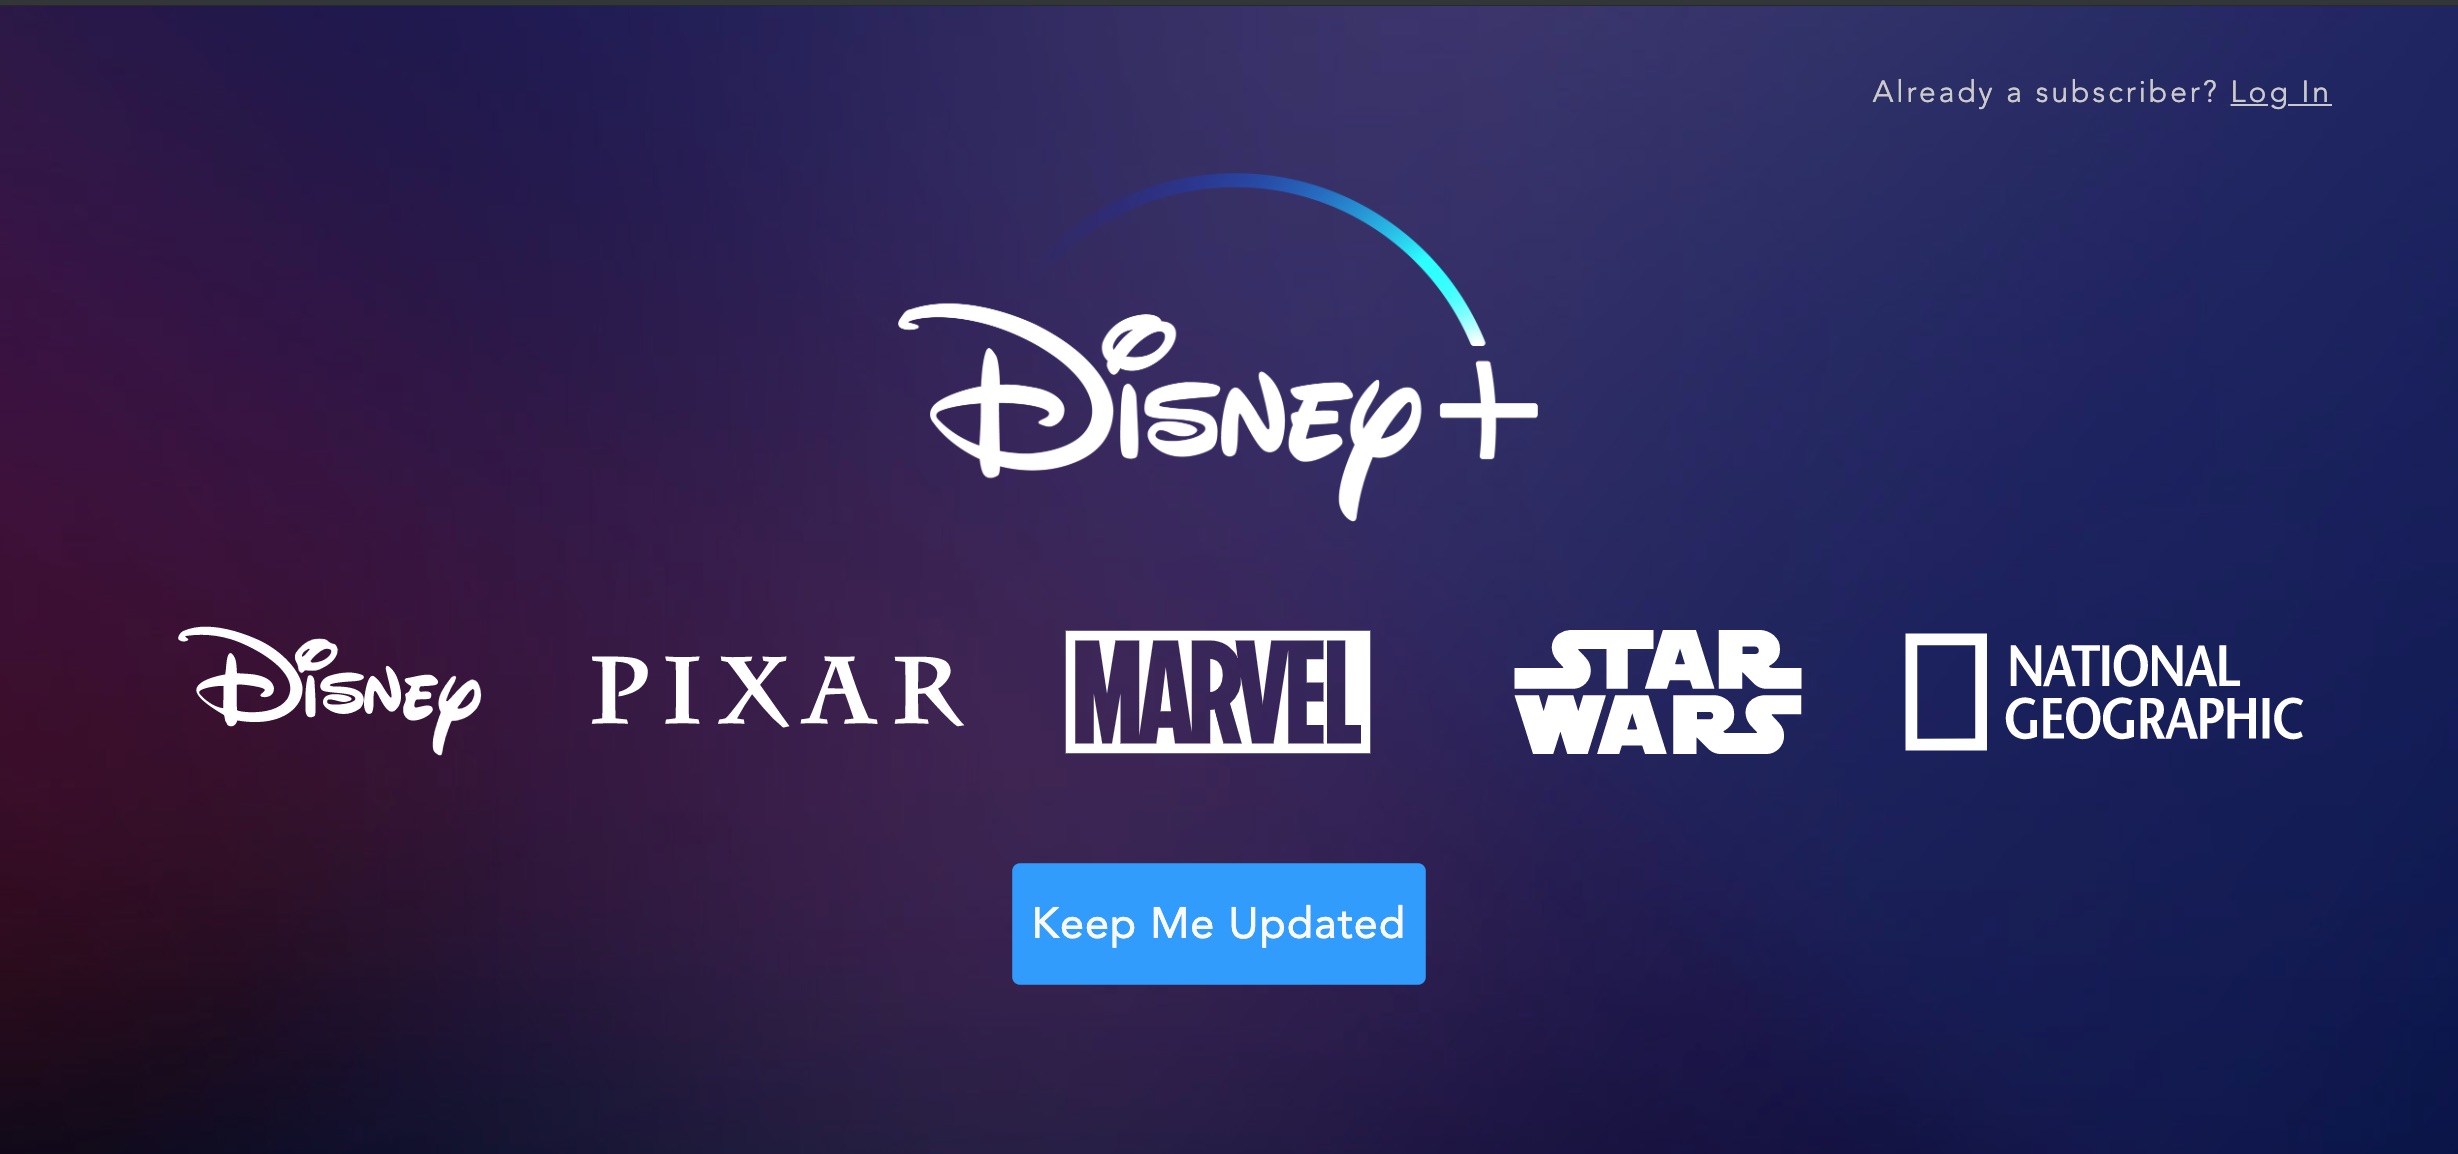 Disney + sekarang tersedia untuk "pre-order" tanpa tawaran bonus